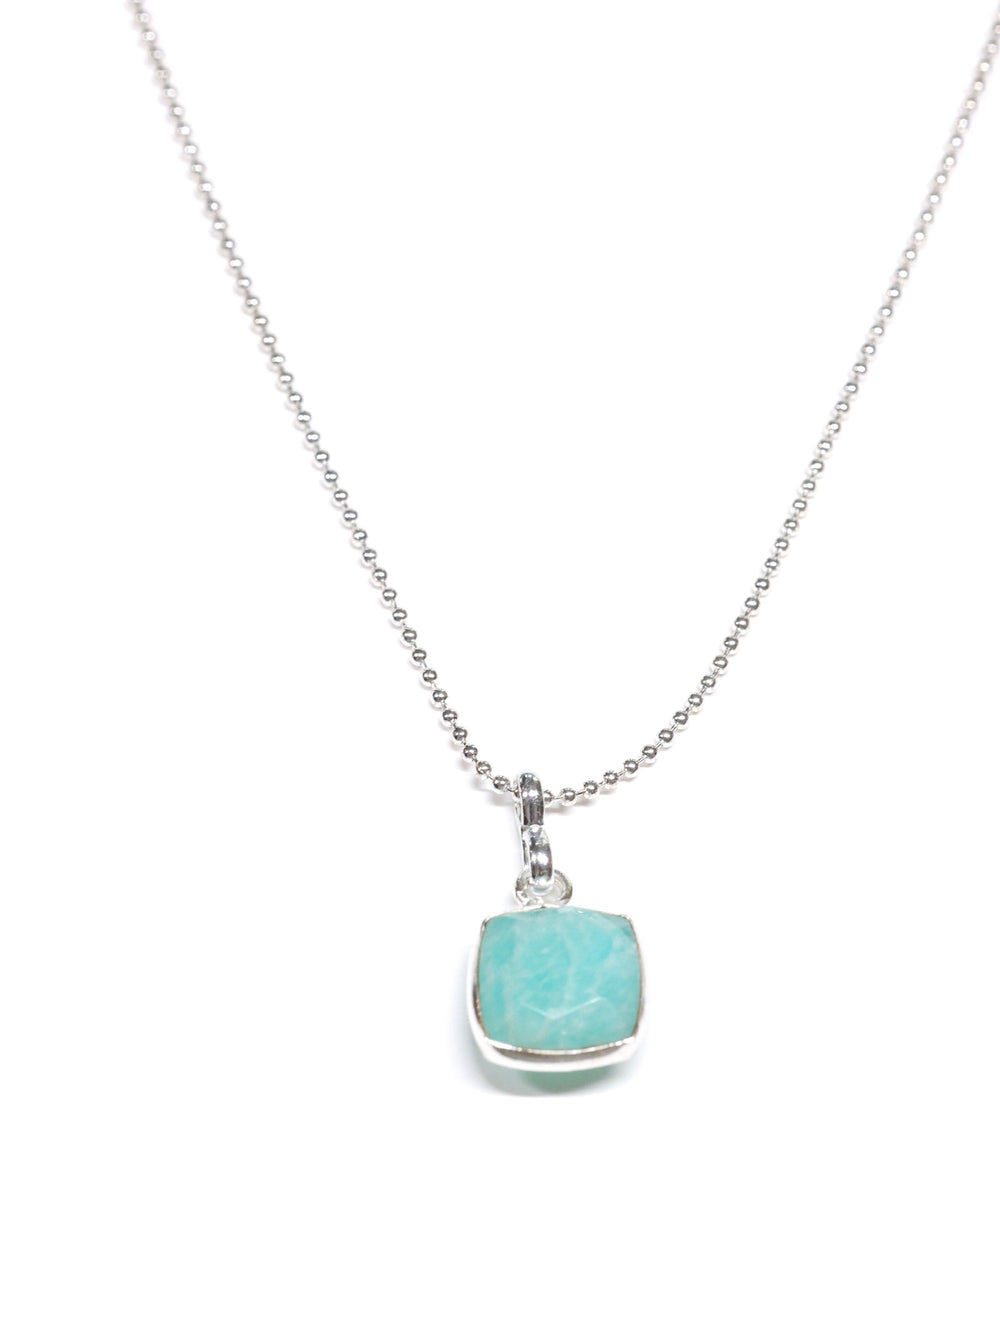 Amazonite square pendant necklace -silver